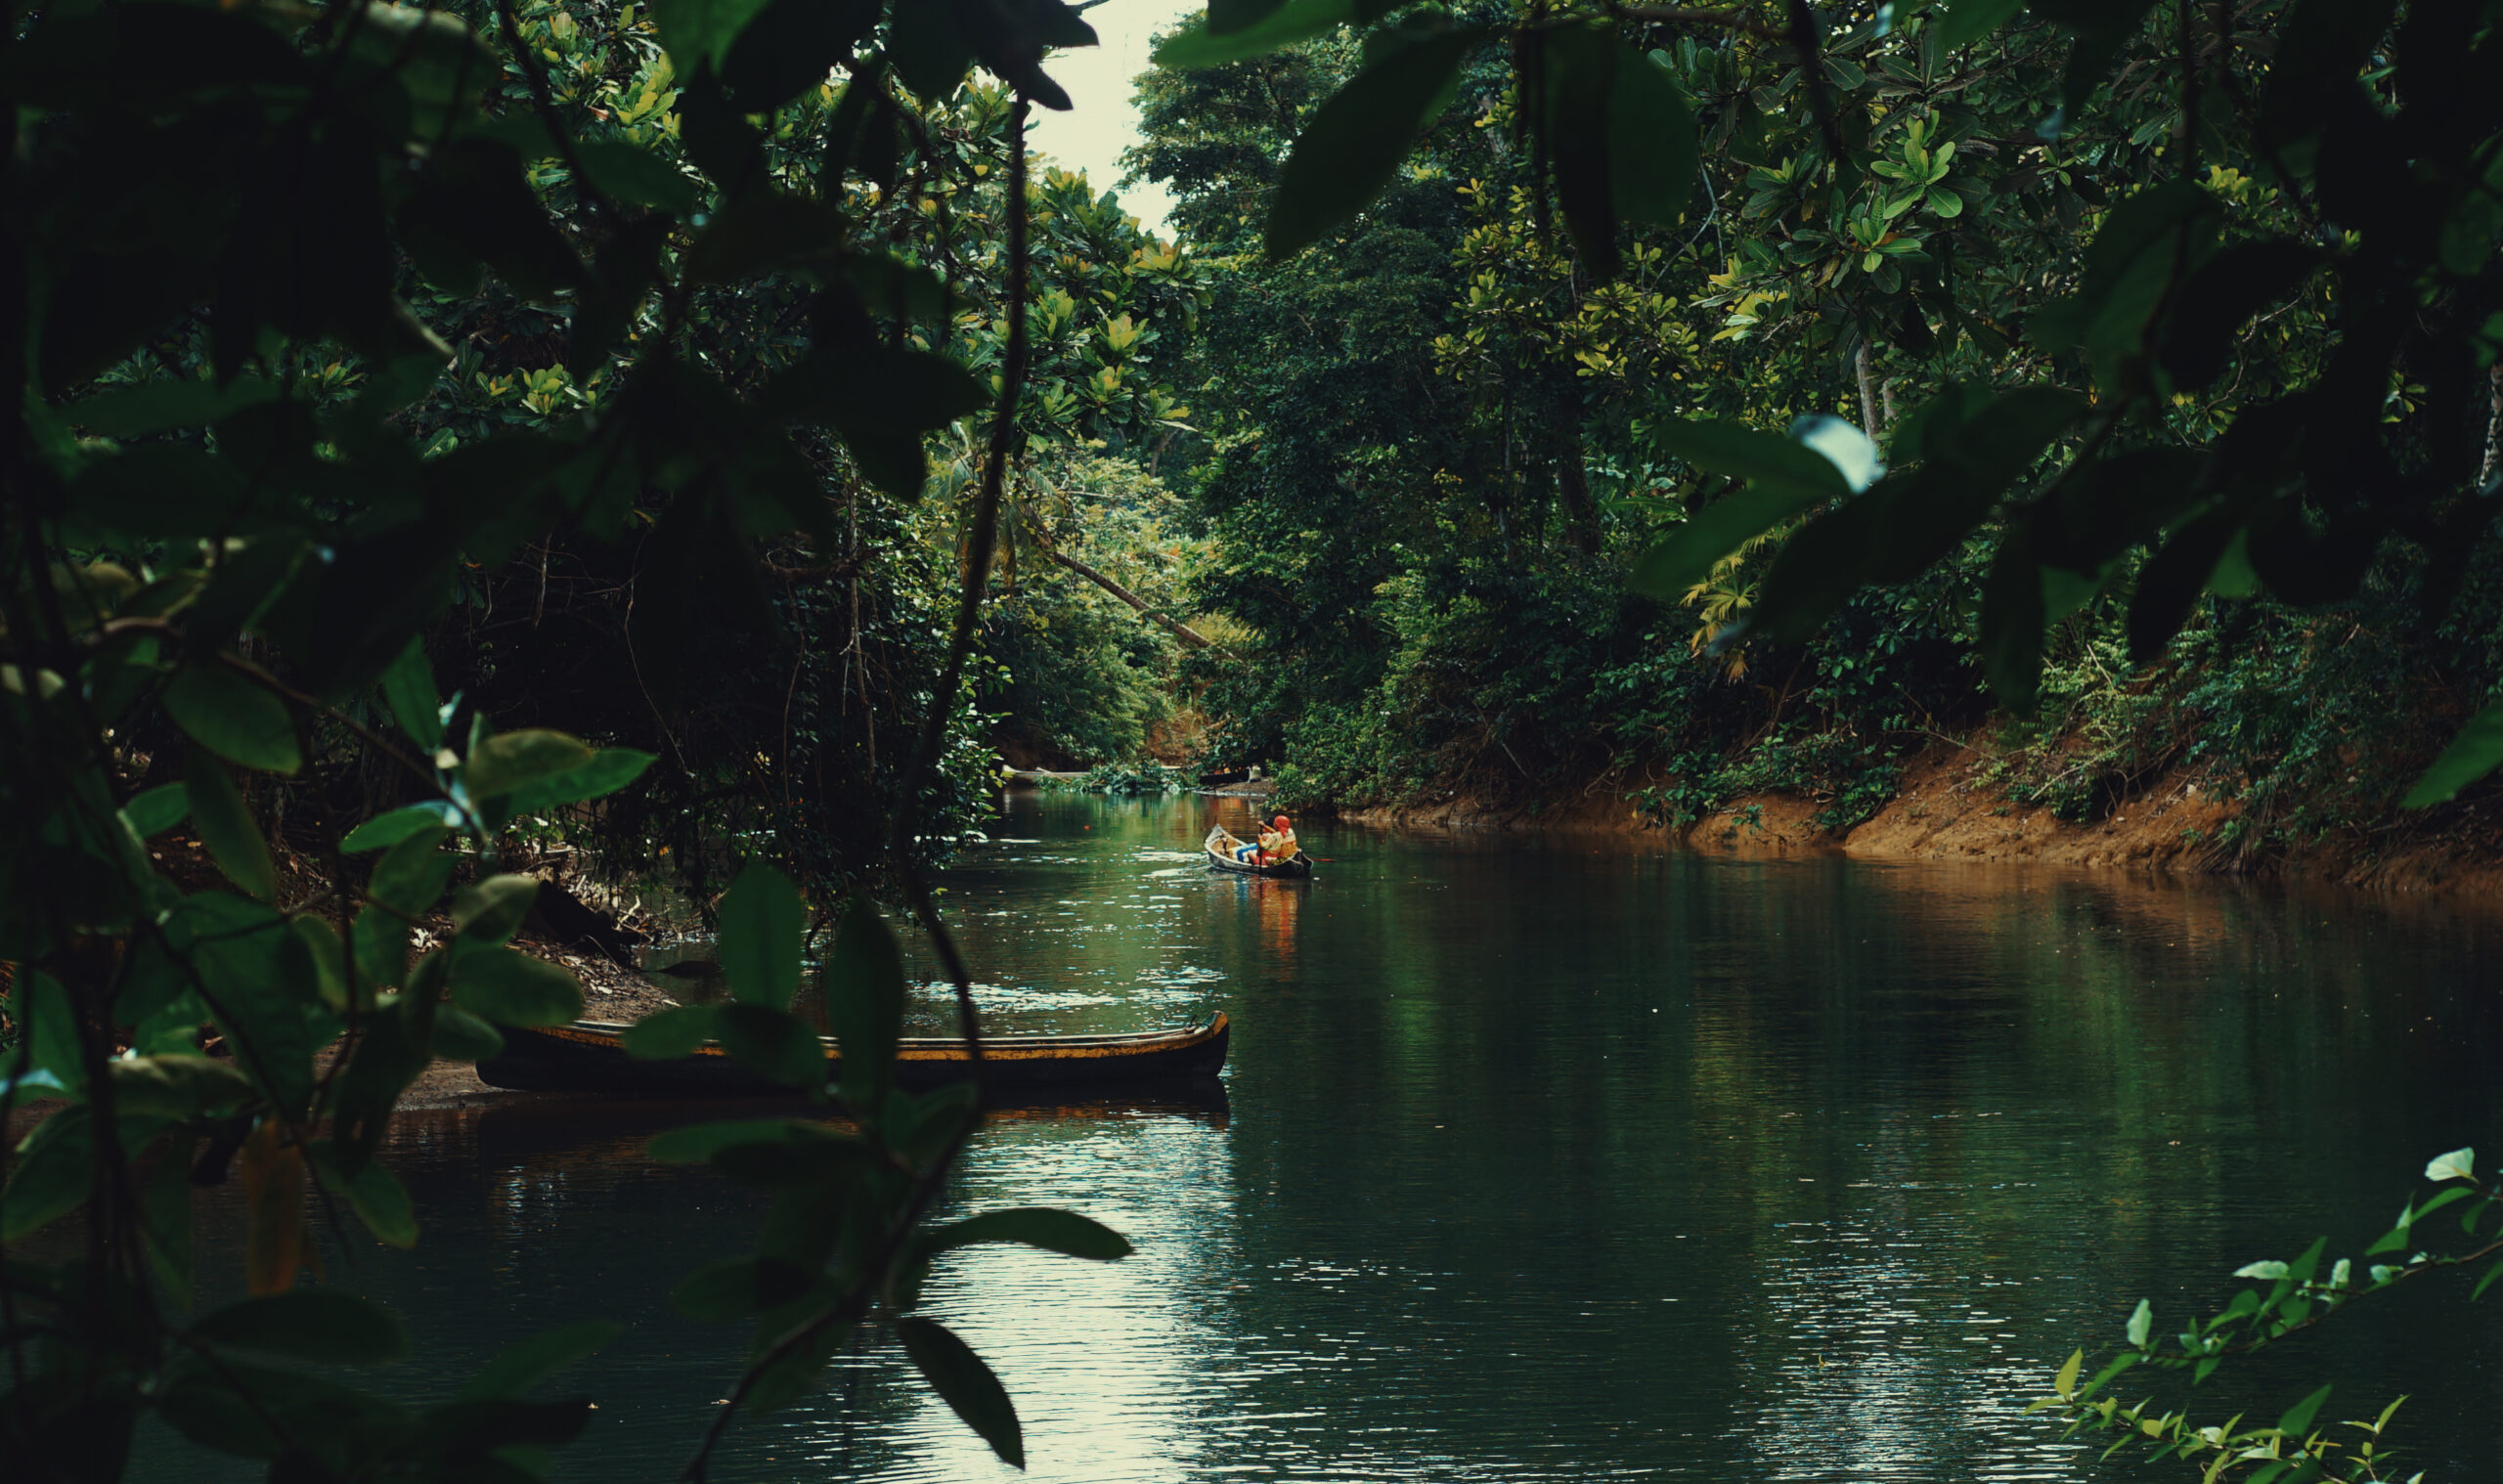 Femme autochtone du peuple Guna du Panama dans la rivière exécutant un rituel pour se connecter avec les esprits de ses ancêtres. 
Gagnants du Concours Photo “Solutions Innovatrices des Peuples Autochtones”
Nom de la photo : Oloubingun Tigwar. Auteur : Aylin Alba